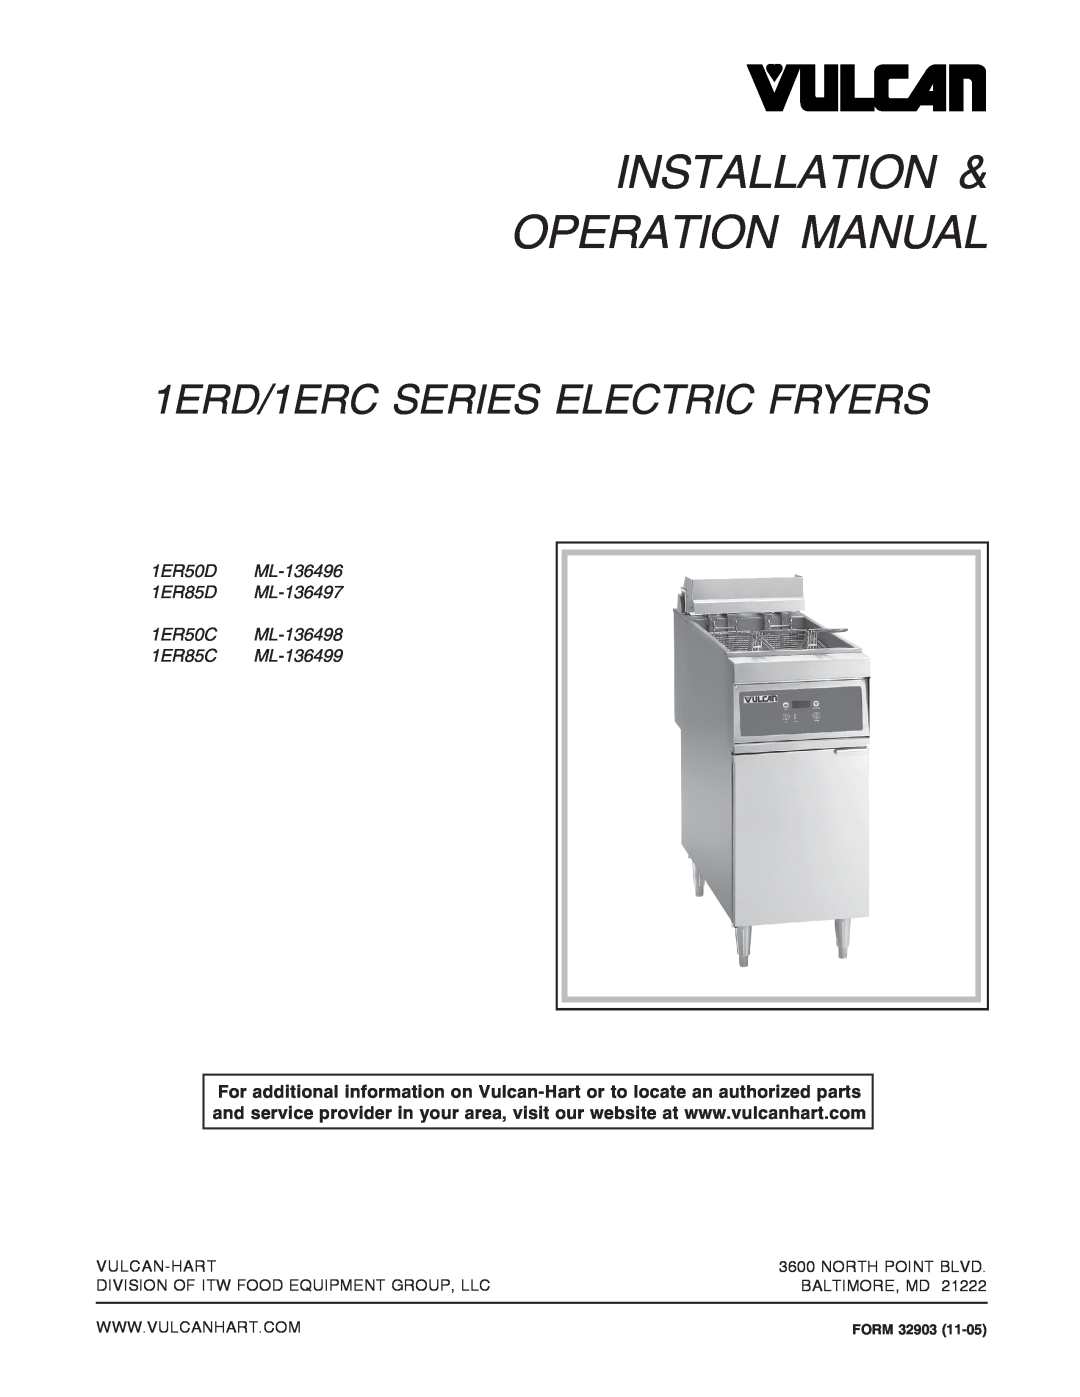 Vulcan-Hart ML-136498 operation manual 1ERD/1ERC SERIES ELECTRIC FRYERS, Vulcan-Hart, North Point Blvd, Baltimore, Md 